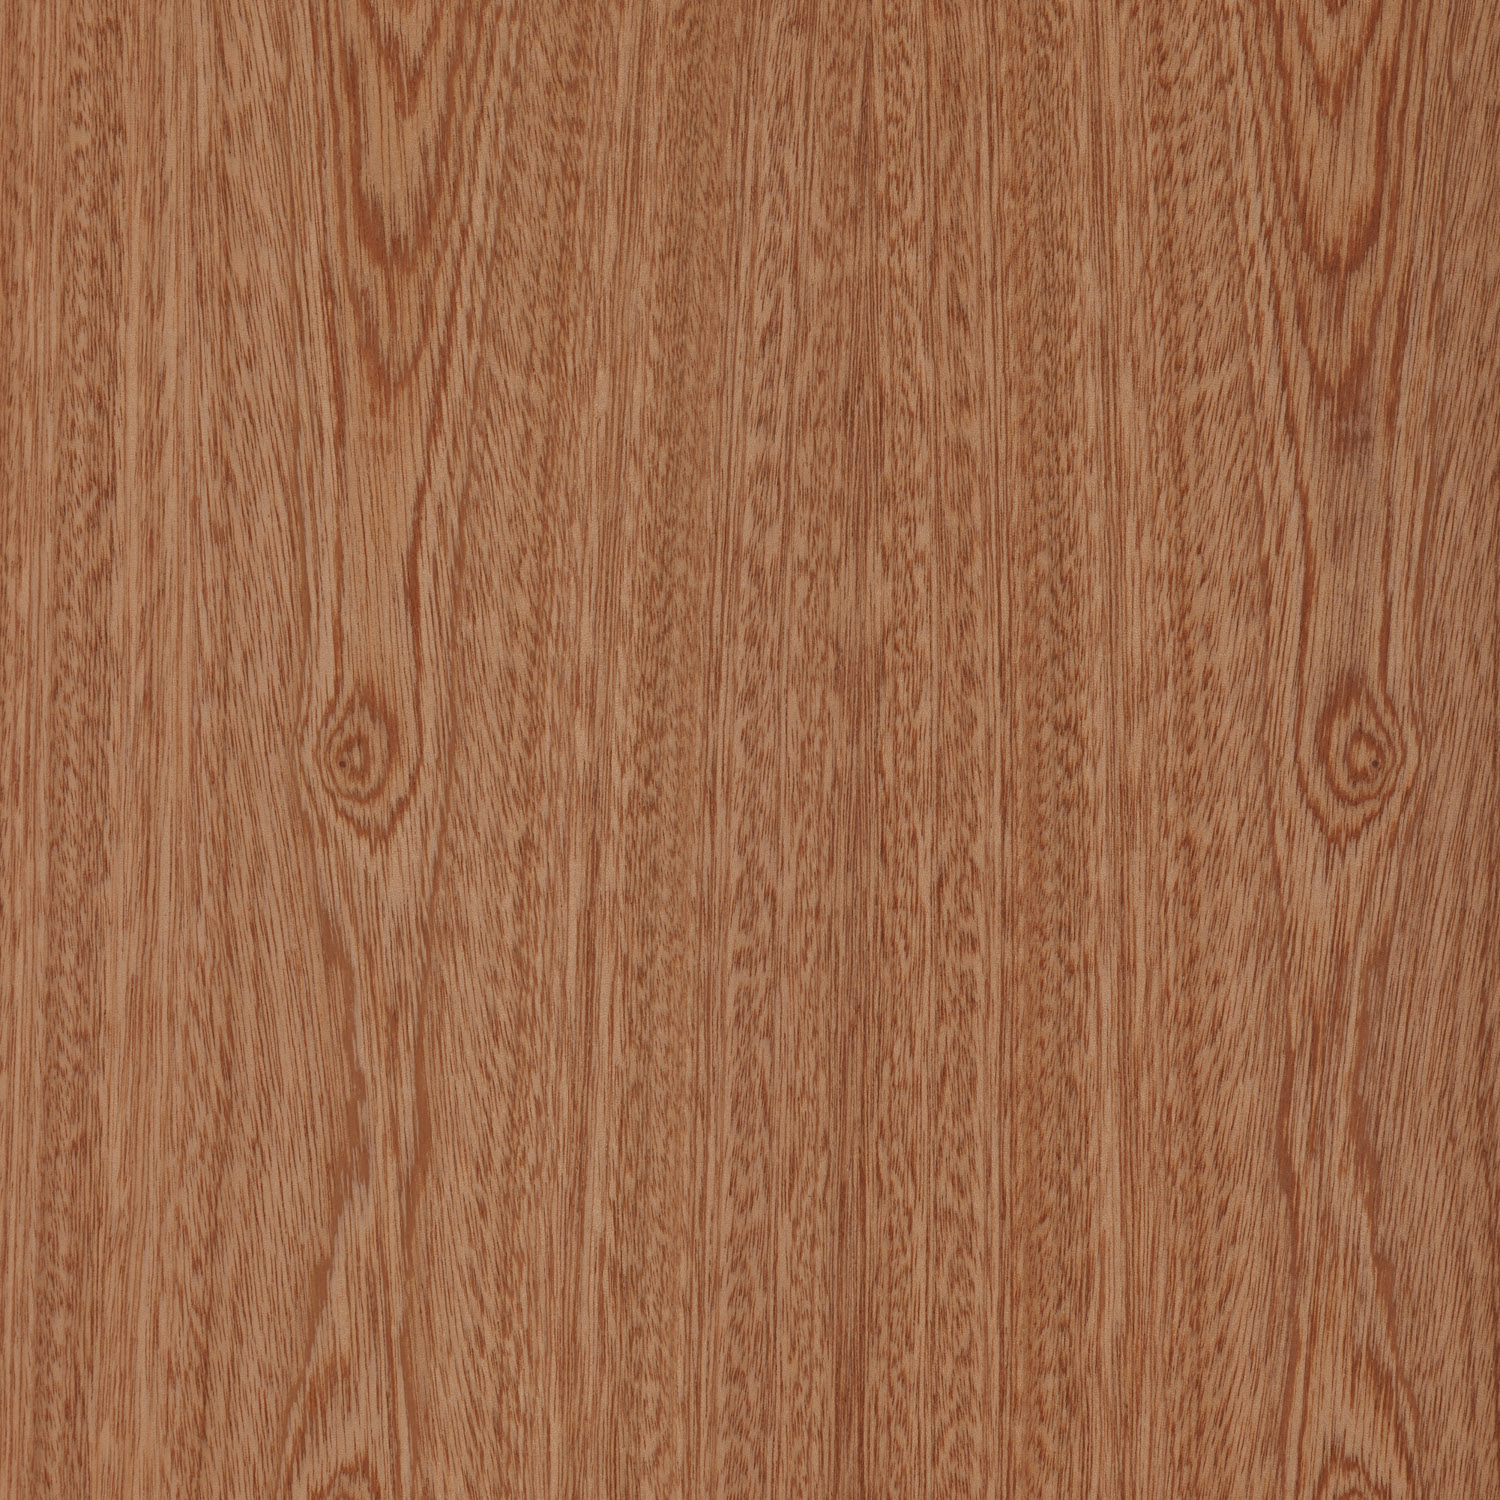 ribbon sapele natural wood veneer panel